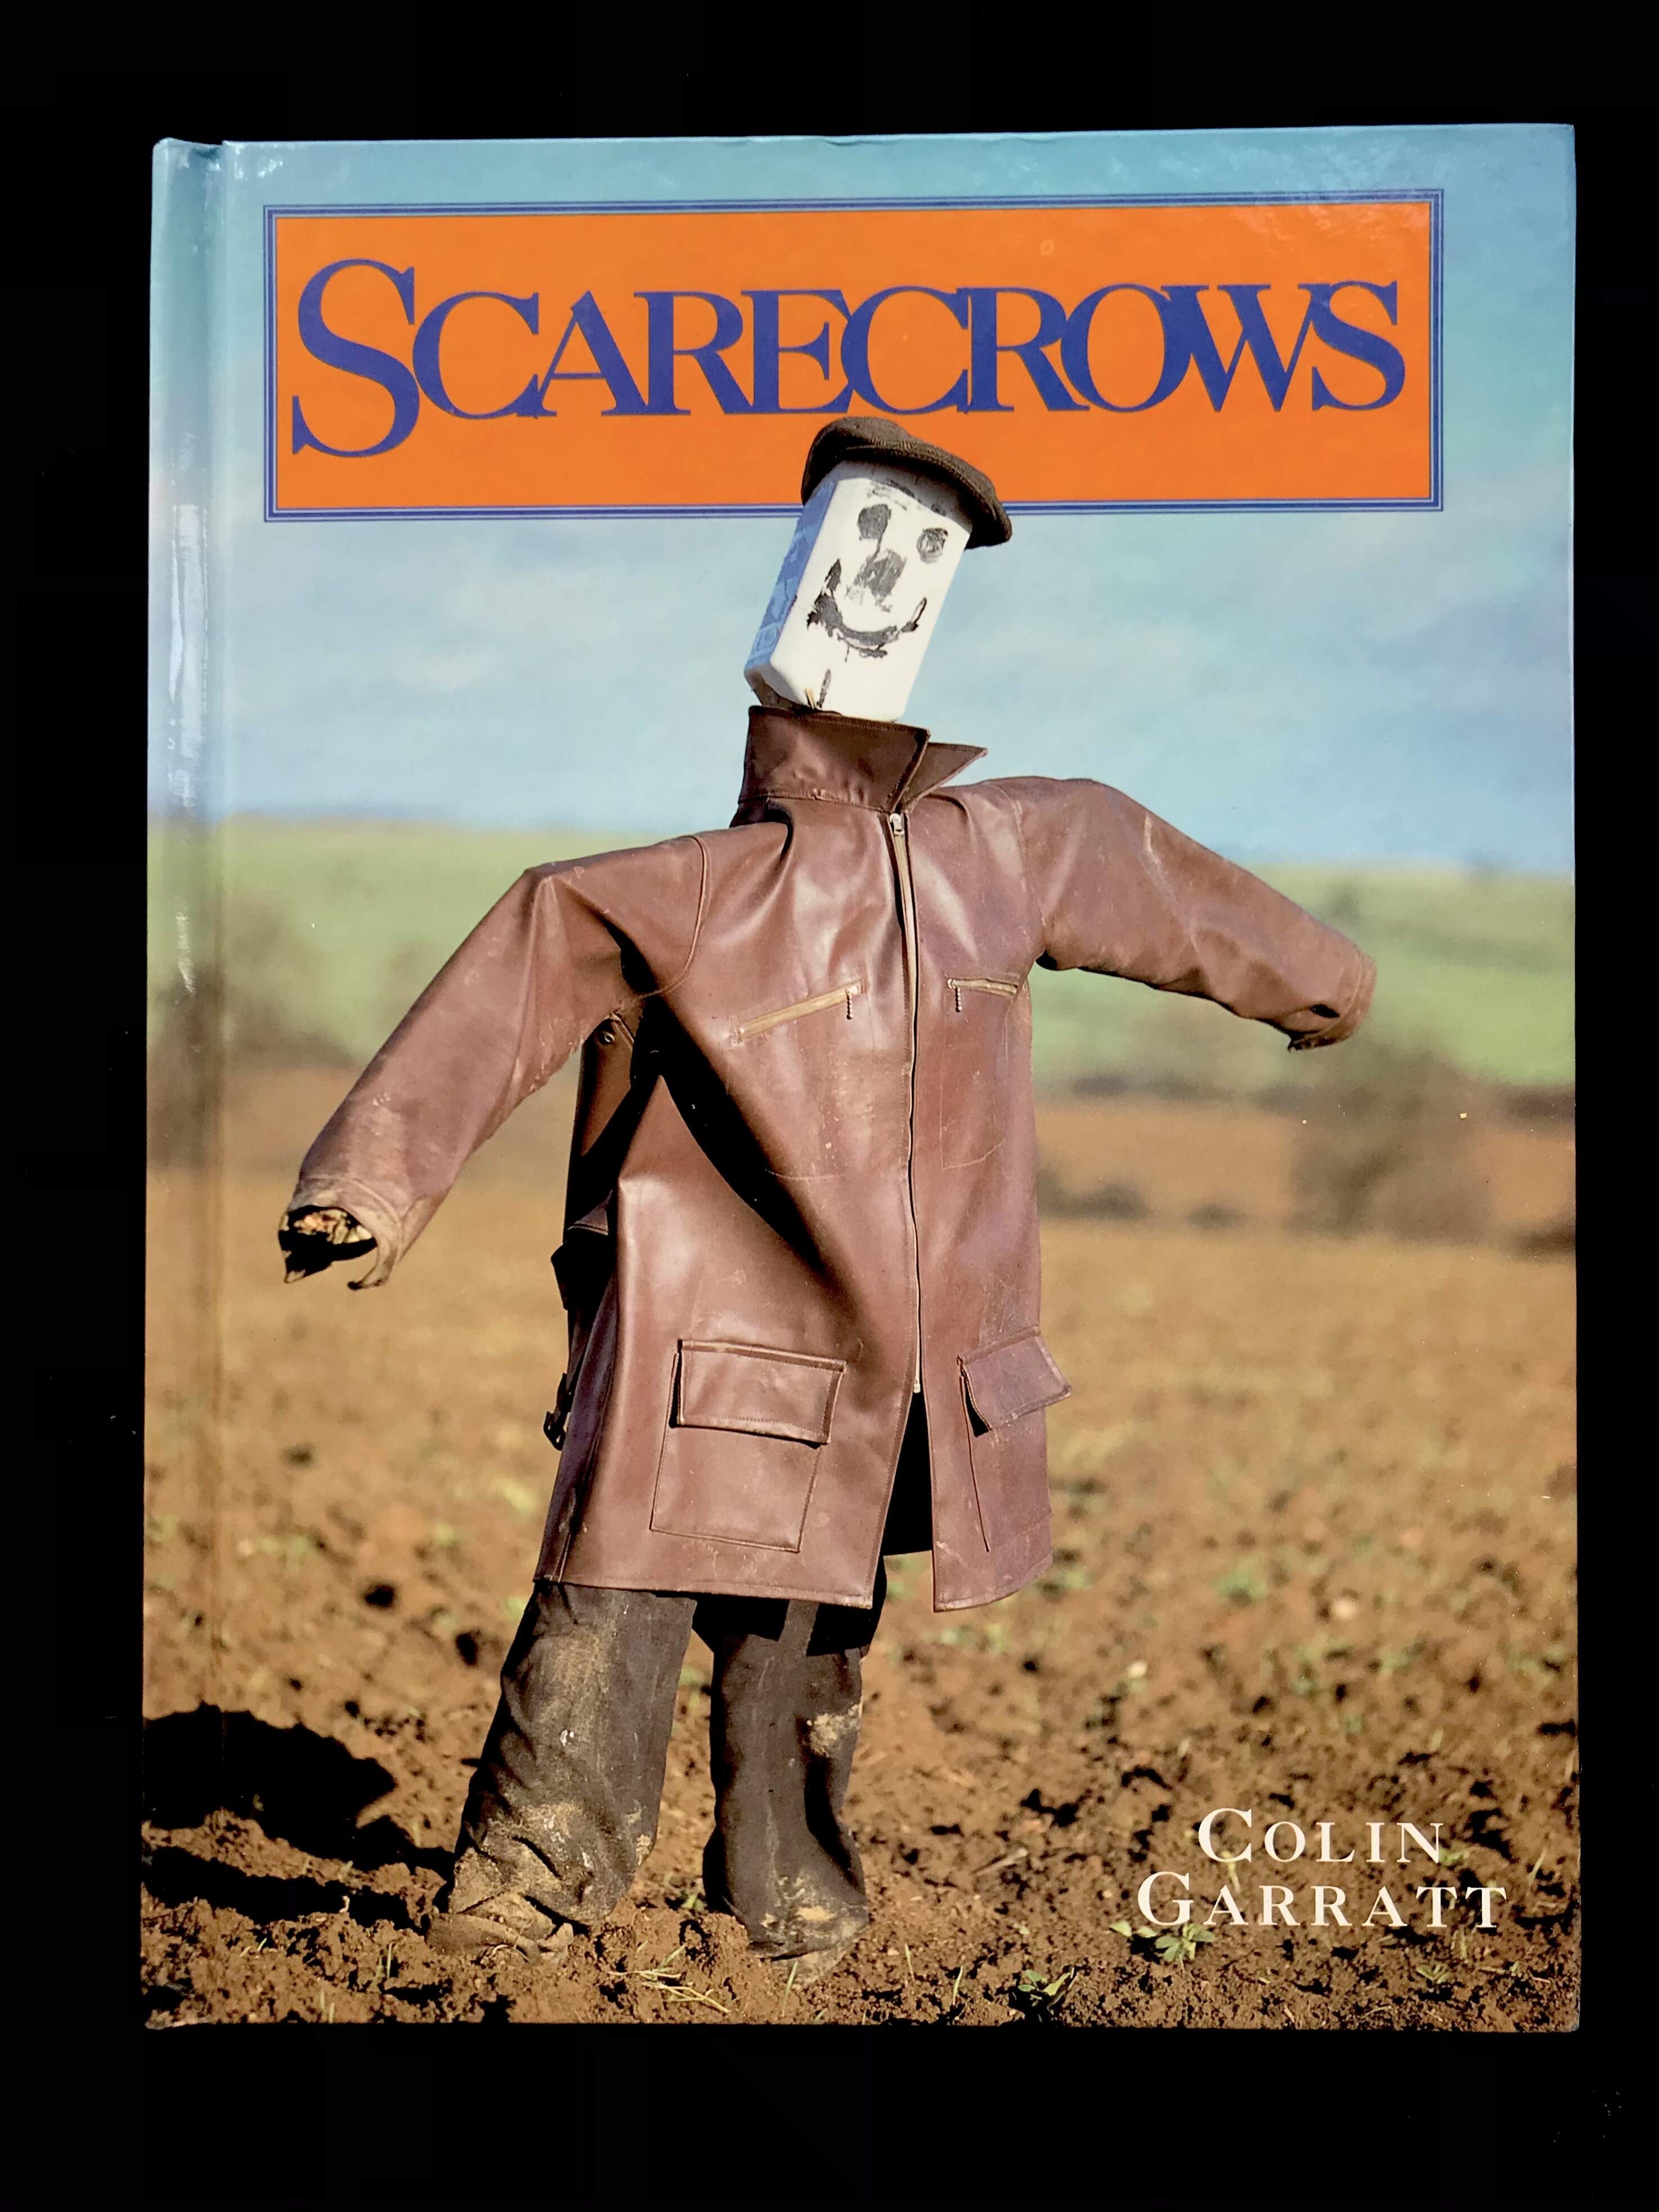 Scarecrows by Colin Garratt